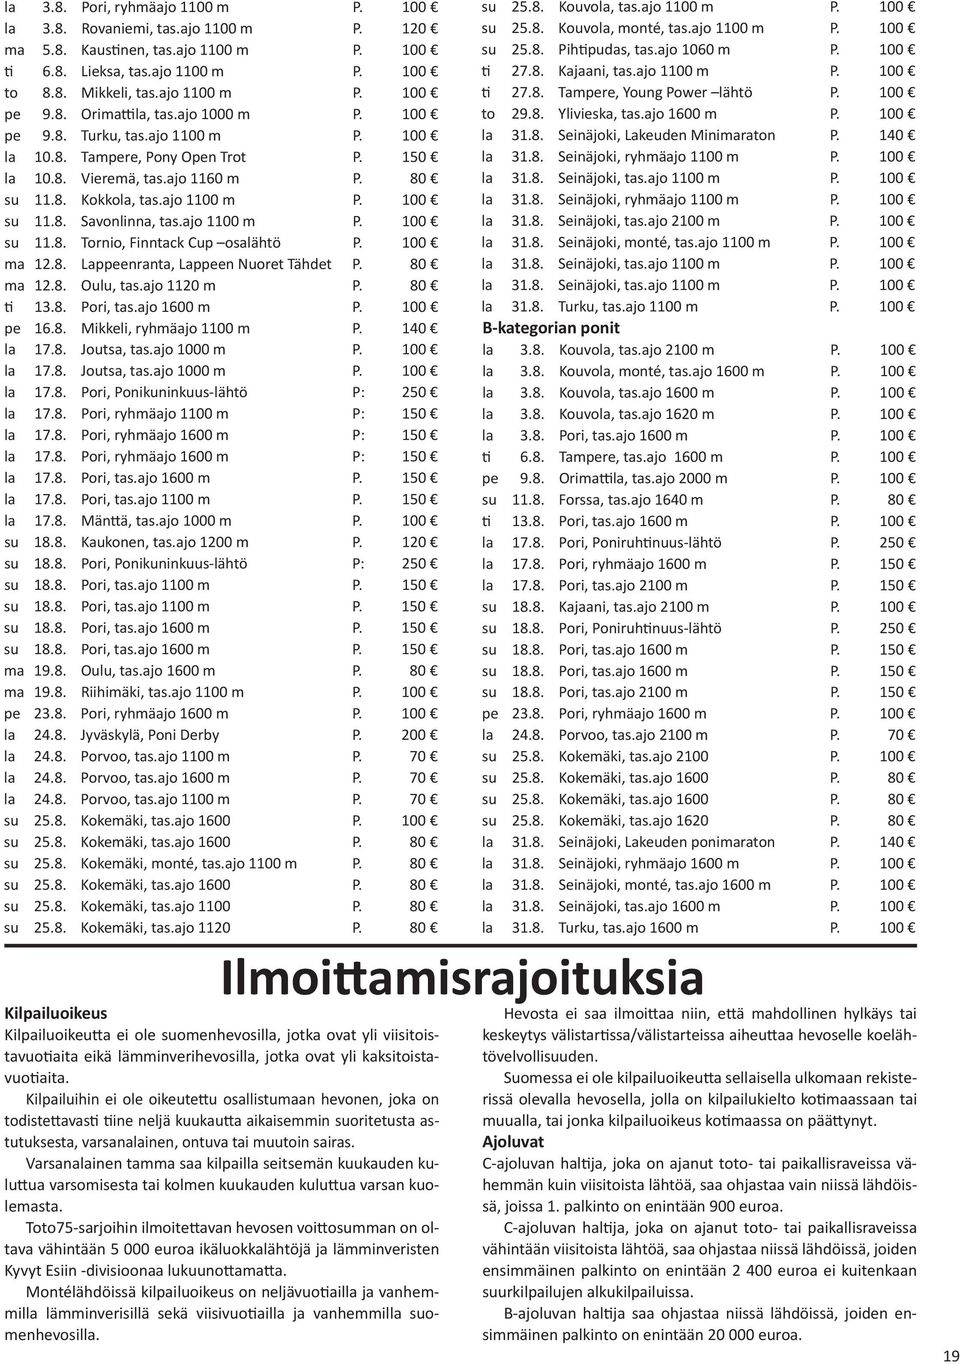 8. Savonlinna, tas.ajo 1100 m P. 100 su 11.8. Tornio, Finntack Cup osalähtö P. 100 ma 12.8. Lappeenranta, Lappeen Nuoret Tähdet P. 80 ma 12.8. Oulu, tas.ajo 1120 m P. 80 ti 13.8. Pori, tas.